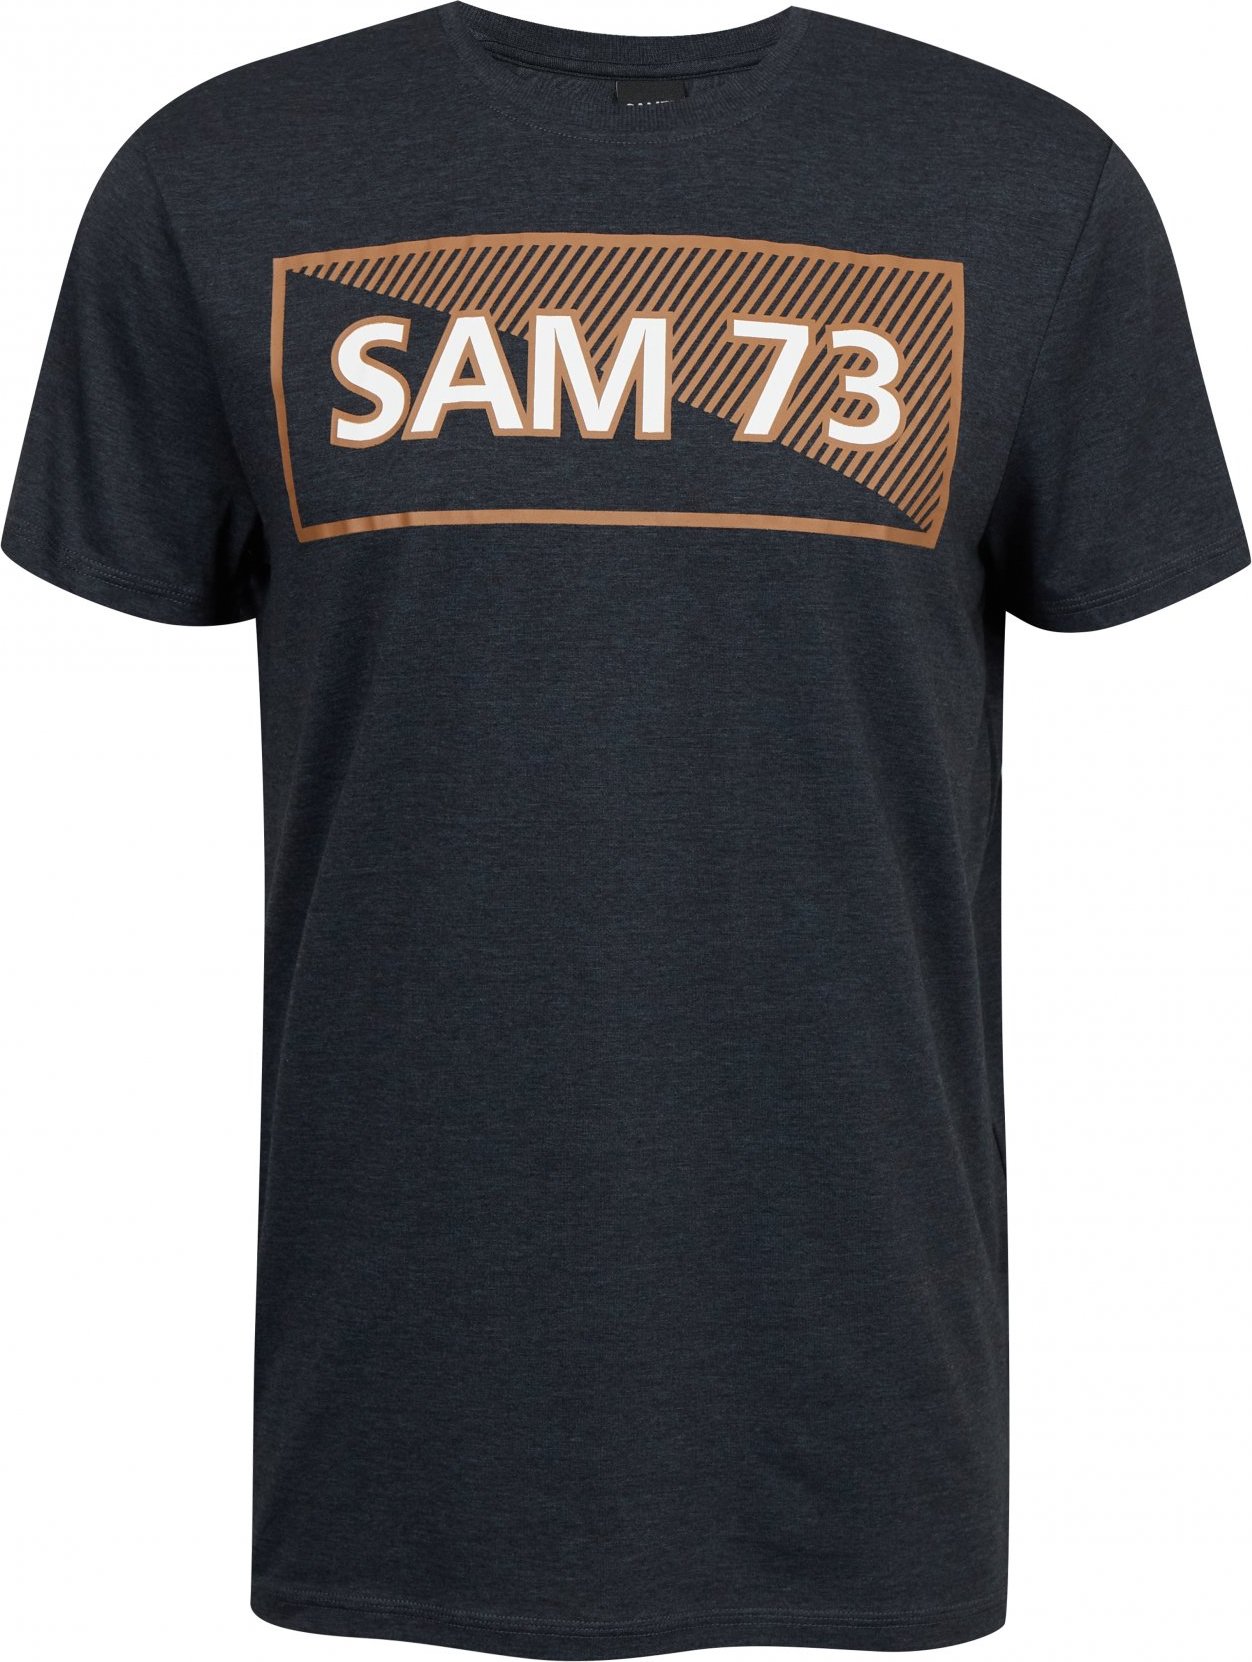 Pánské triko SAM73 fenri černé Velikost: M